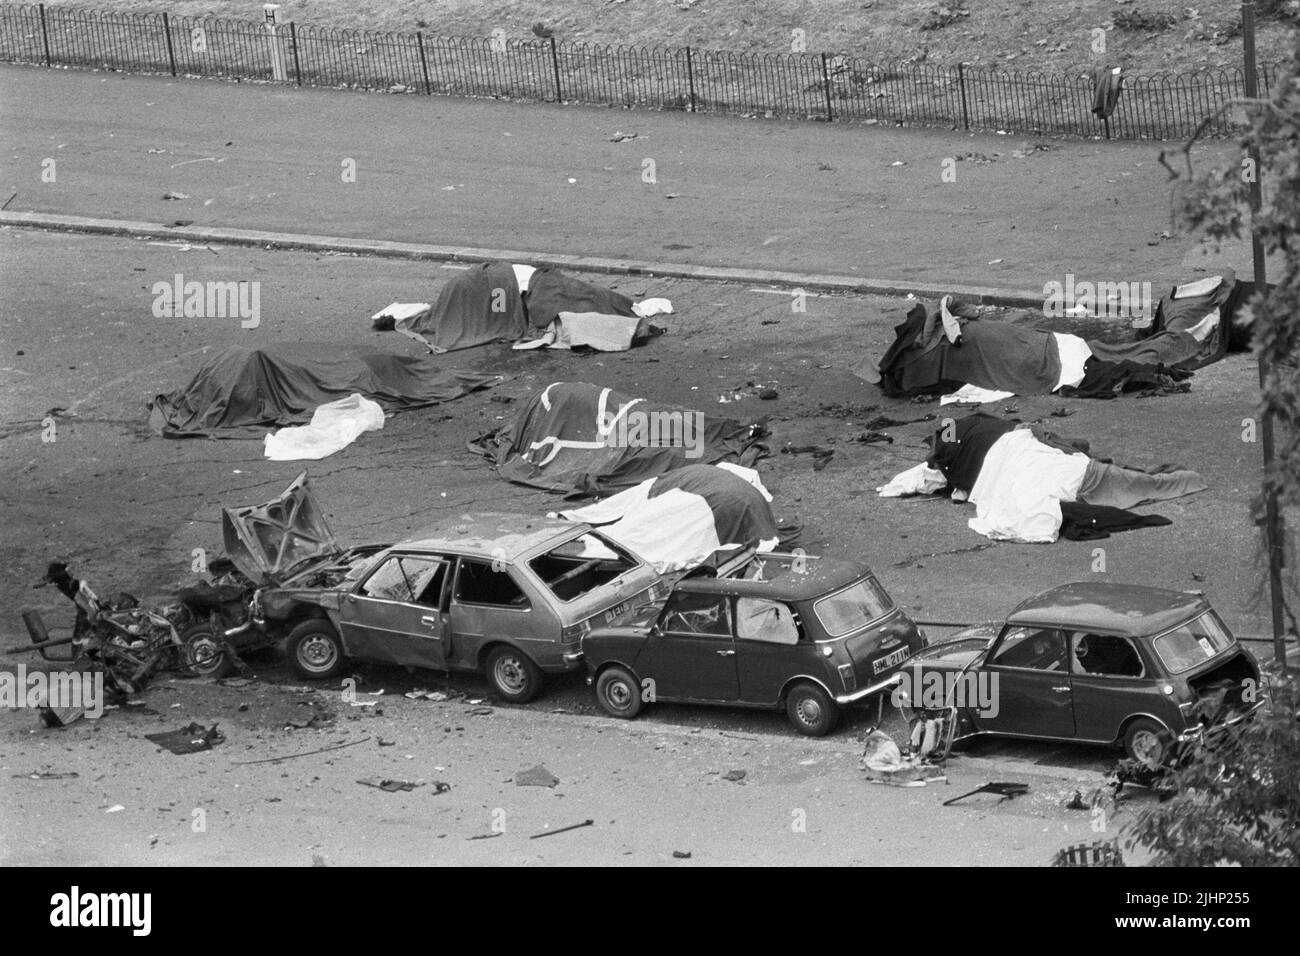 Foto de archivo de fecha 20/7/1982 de caballos muertos yacen cubiertos en las secuelas de una explosión de coche bomba cerca de los cuarteles de Hyde Park. Las familias de los soldados muertos en los atentados con bombas del IRA en Hyde Park y Regent's Park han dicho que su sufrimiento sigue sin disminuir 40 años después. En total, 11 militares murieron en los dos ataques que tuvieron lugar a pocas horas en Londres el 20 1982 de julio. Fecha de emisión: Miércoles 20 de julio de 2022. Foto de stock